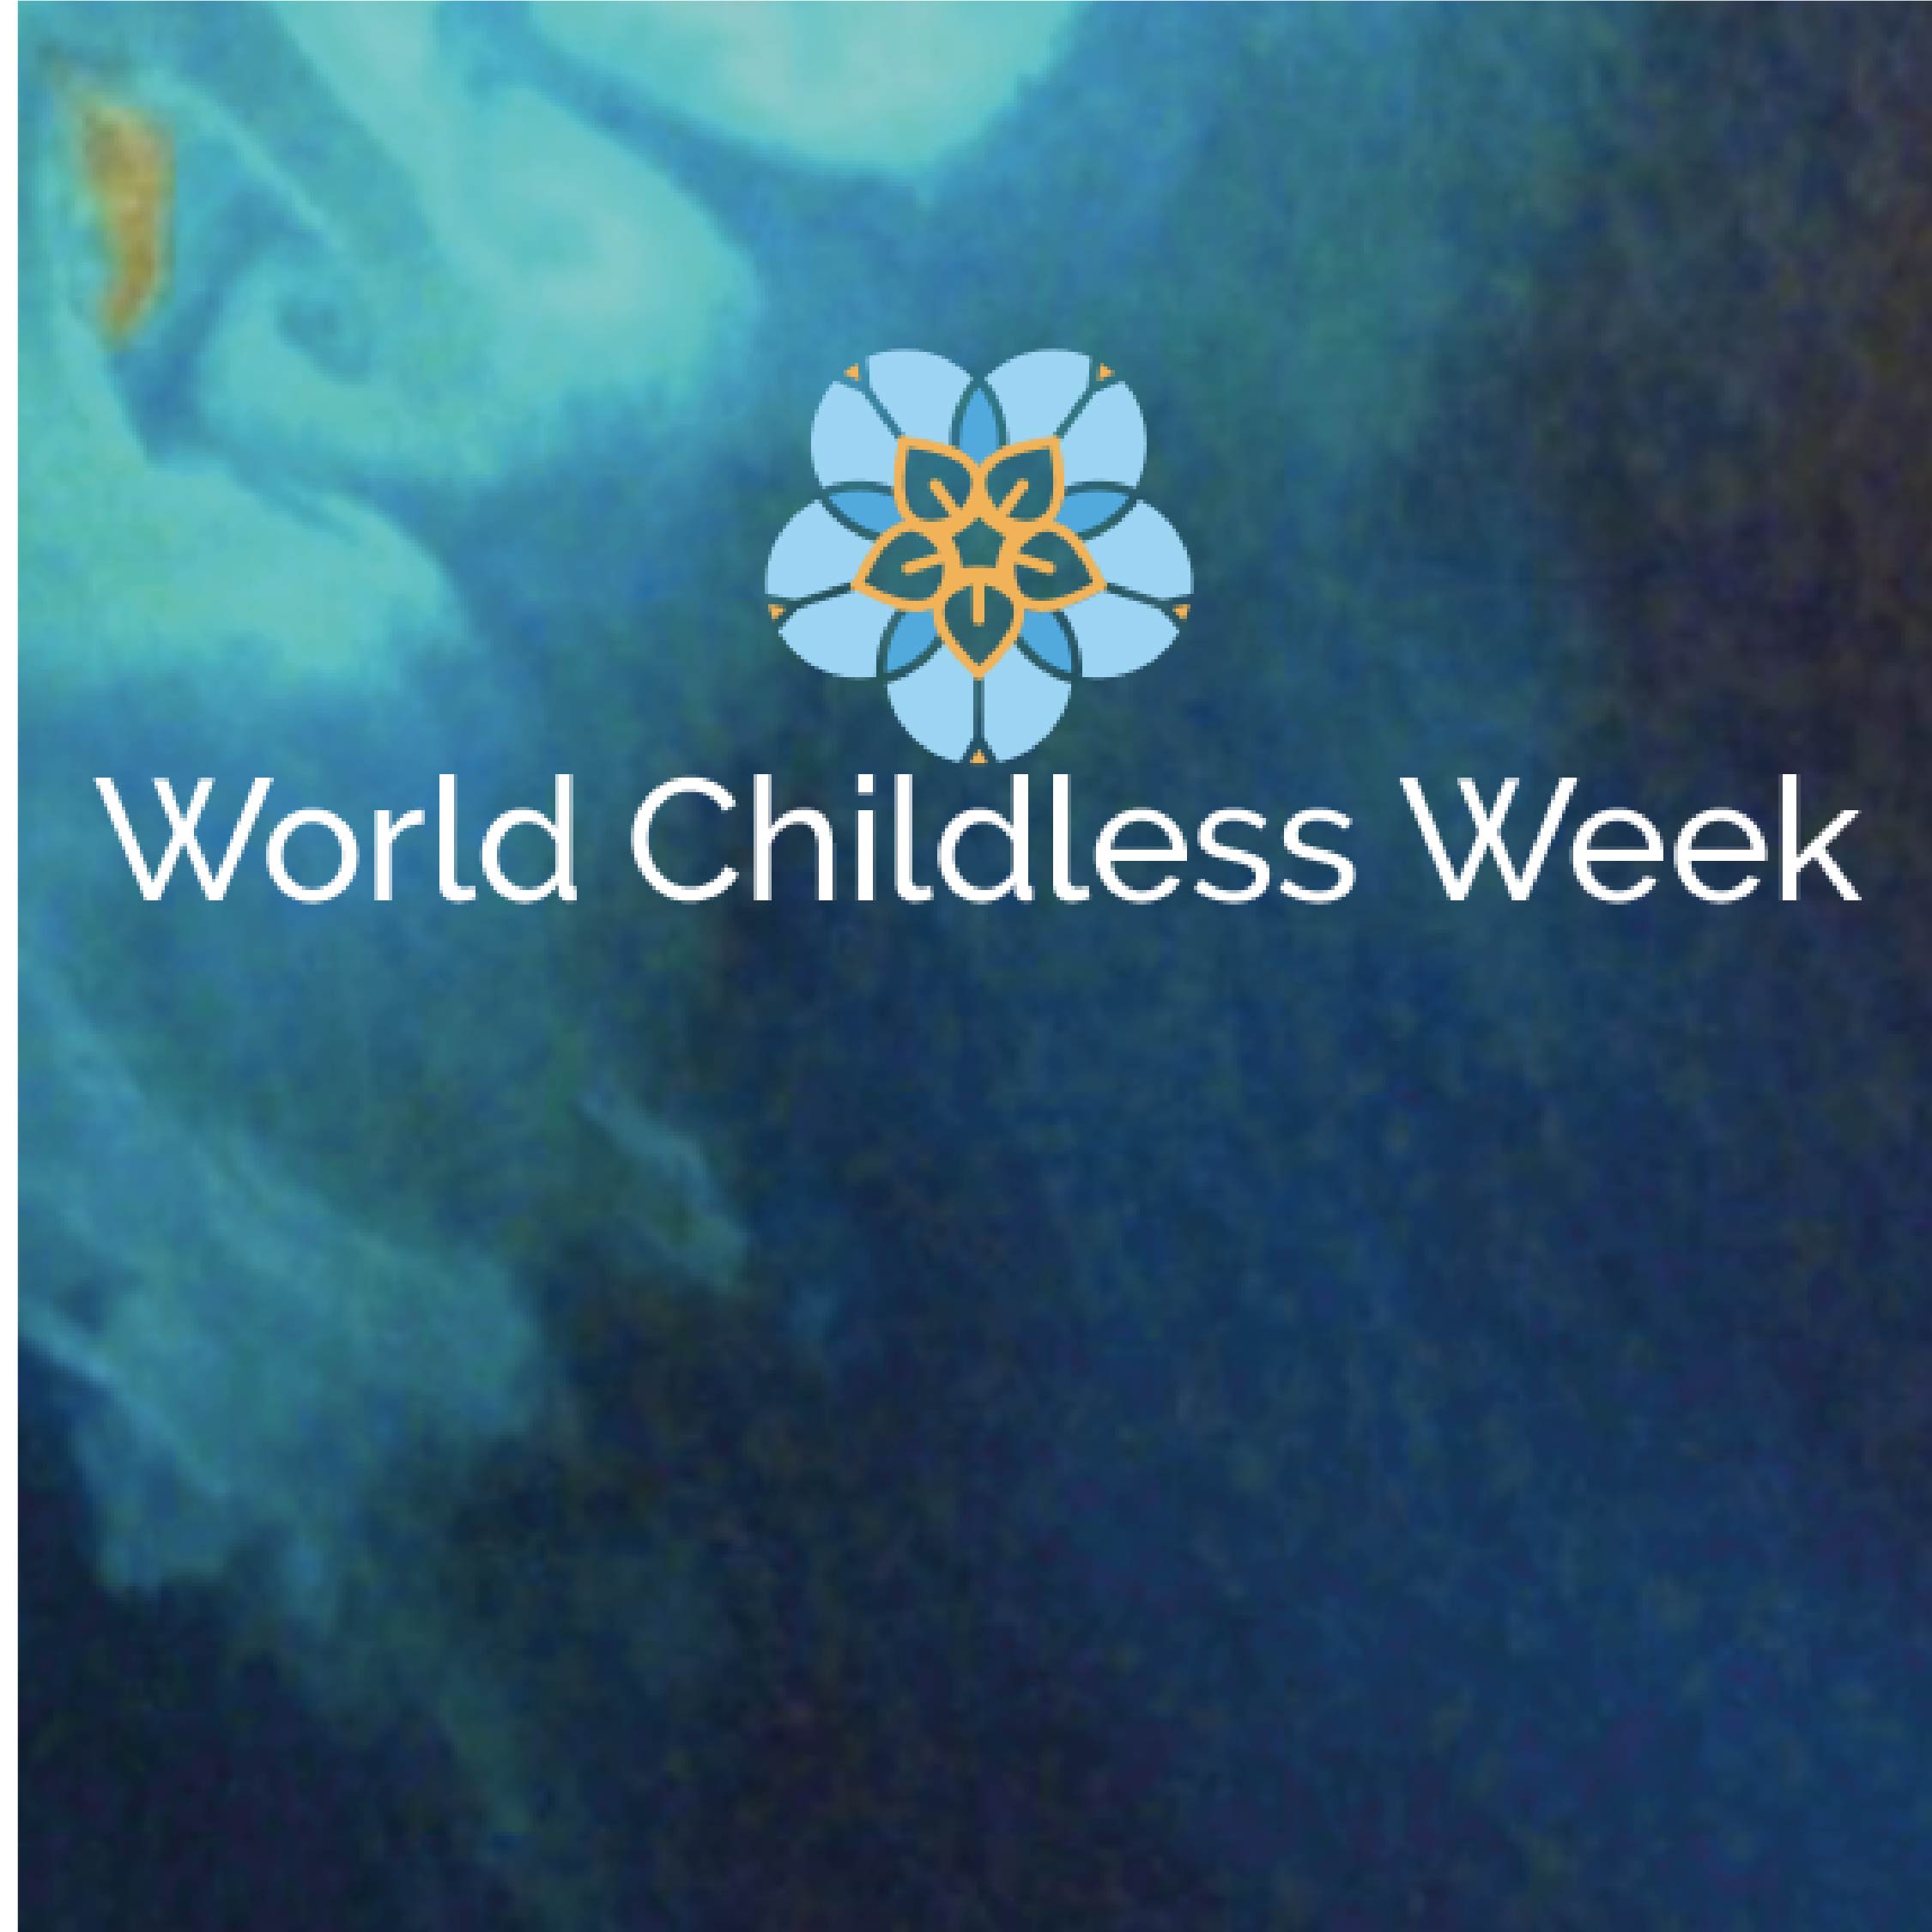 World Childless Week